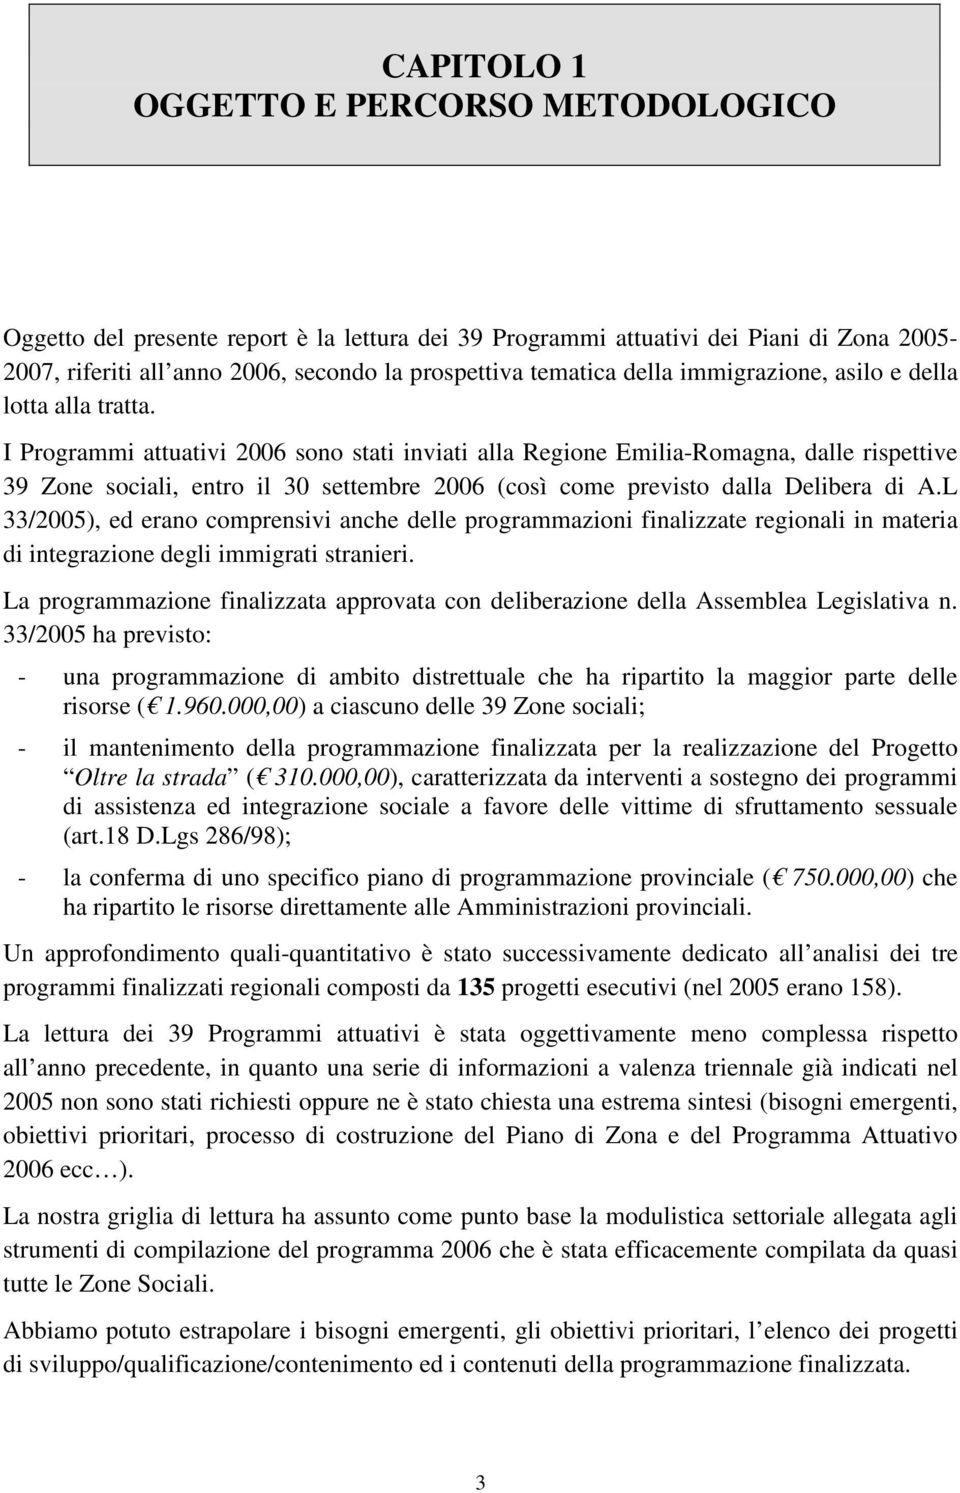 I Programmi attuativi 2006 sono stati inviati alla Regione Emilia-Romagna, dalle rispettive 39 Zone sociali, entro il 30 settembre 2006 (così come previsto dalla Delibera di A.